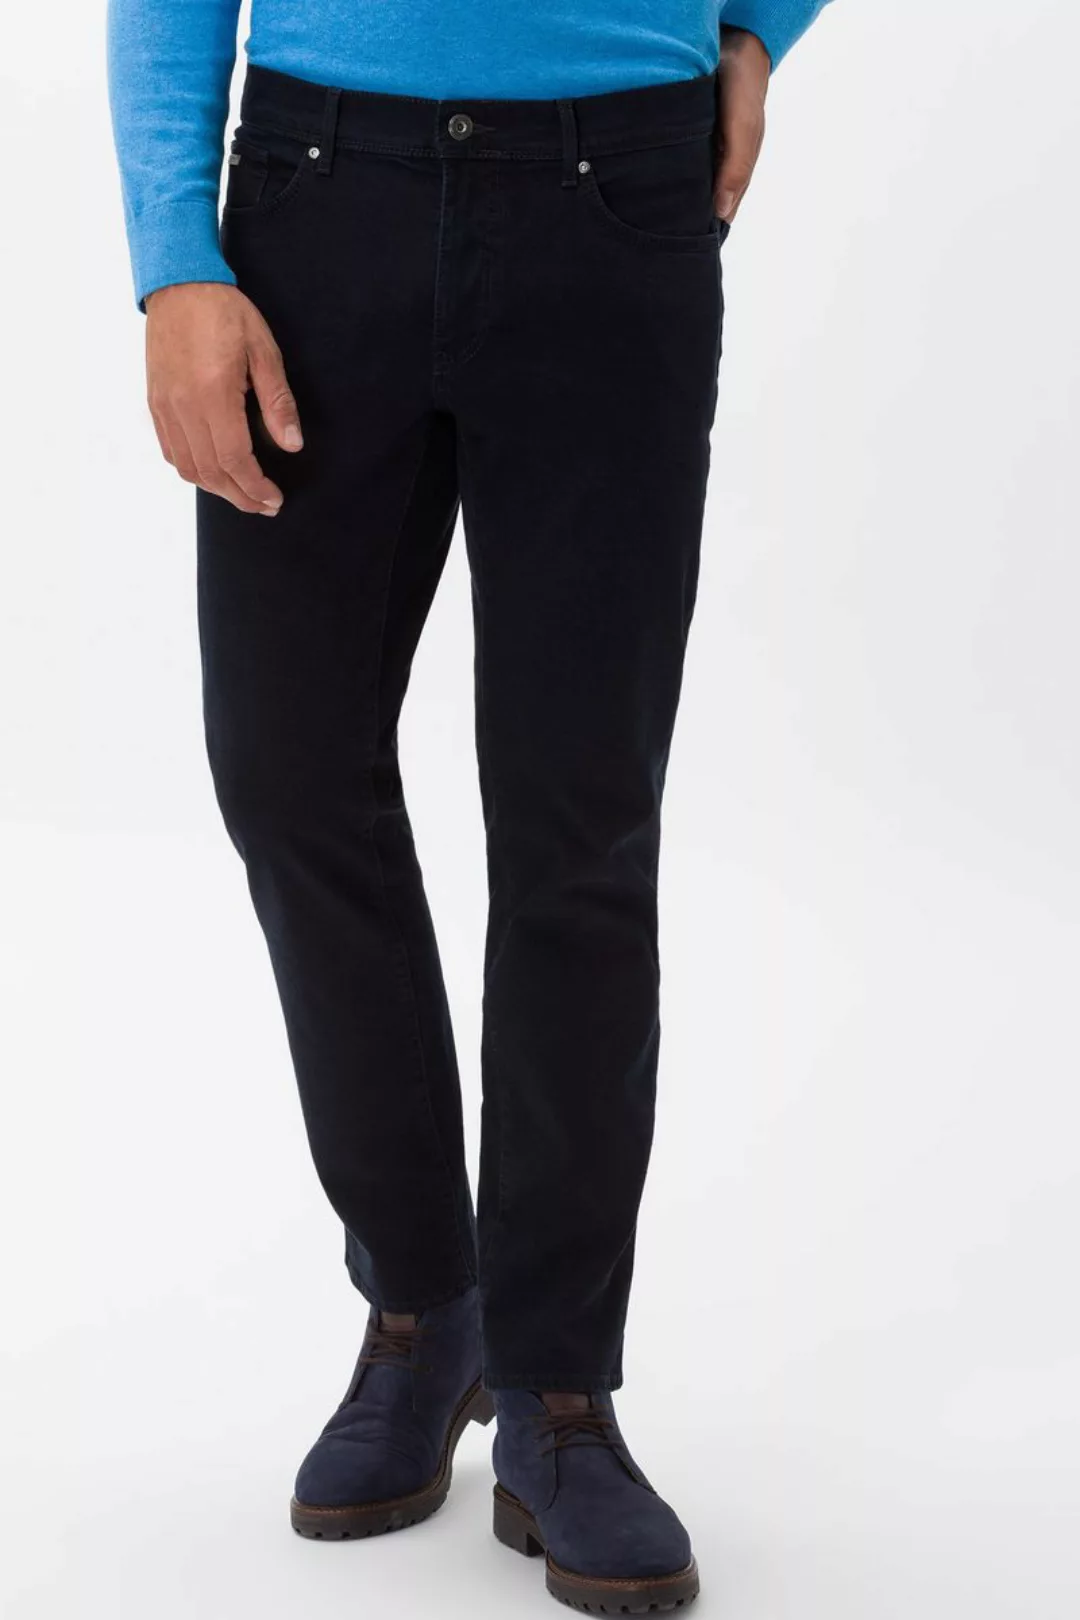 Brax Cadiz Jeans Navy Blau - Größe W 35 - L 32 günstig online kaufen